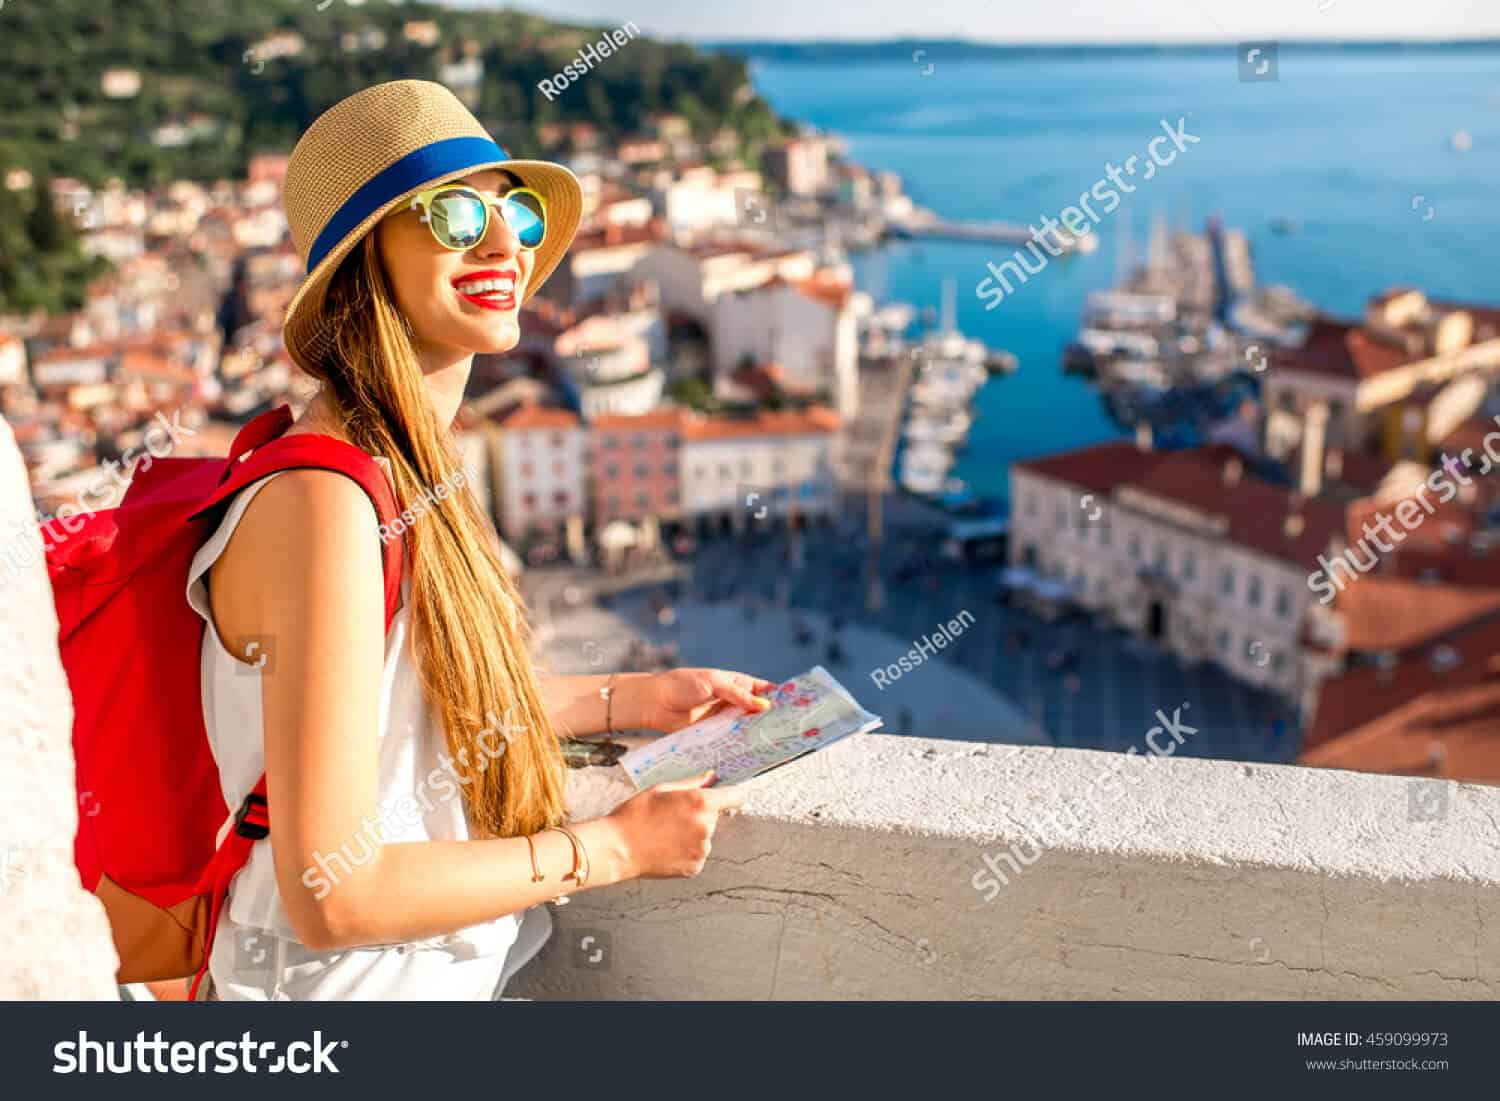 240 ngàn hình ảnh cô gái trẻ Châu Âu chất lượng cao trên Shutterstock